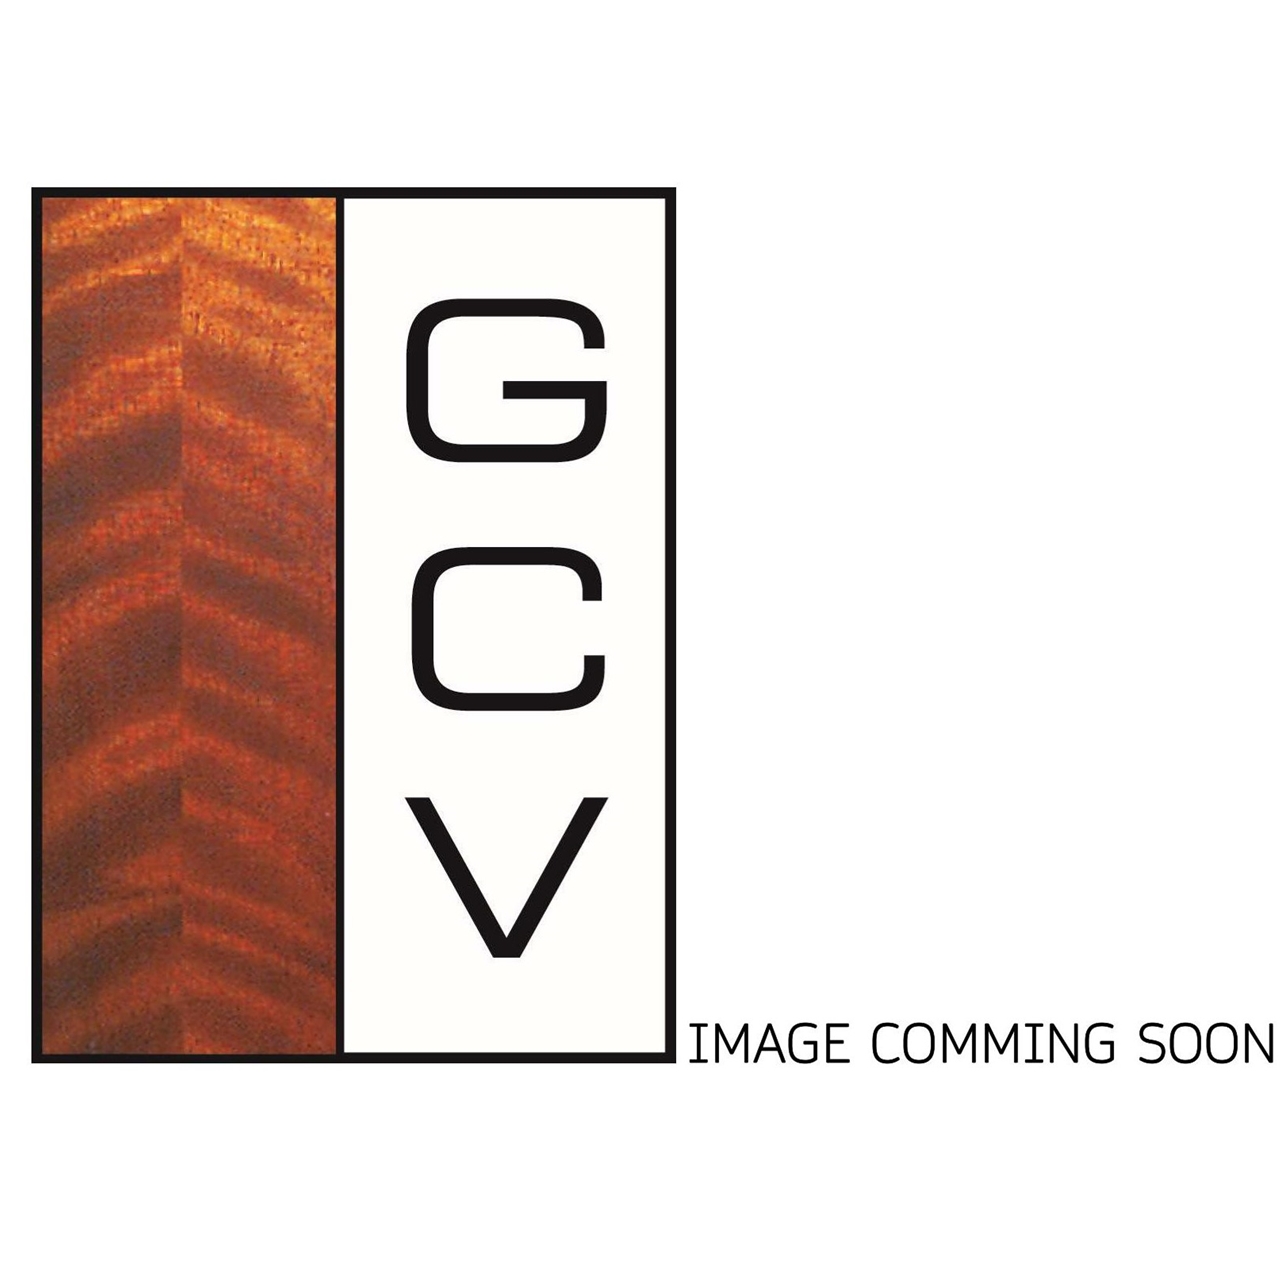 GCV Violine 4/4 Ysaye EU-komplett (900e)